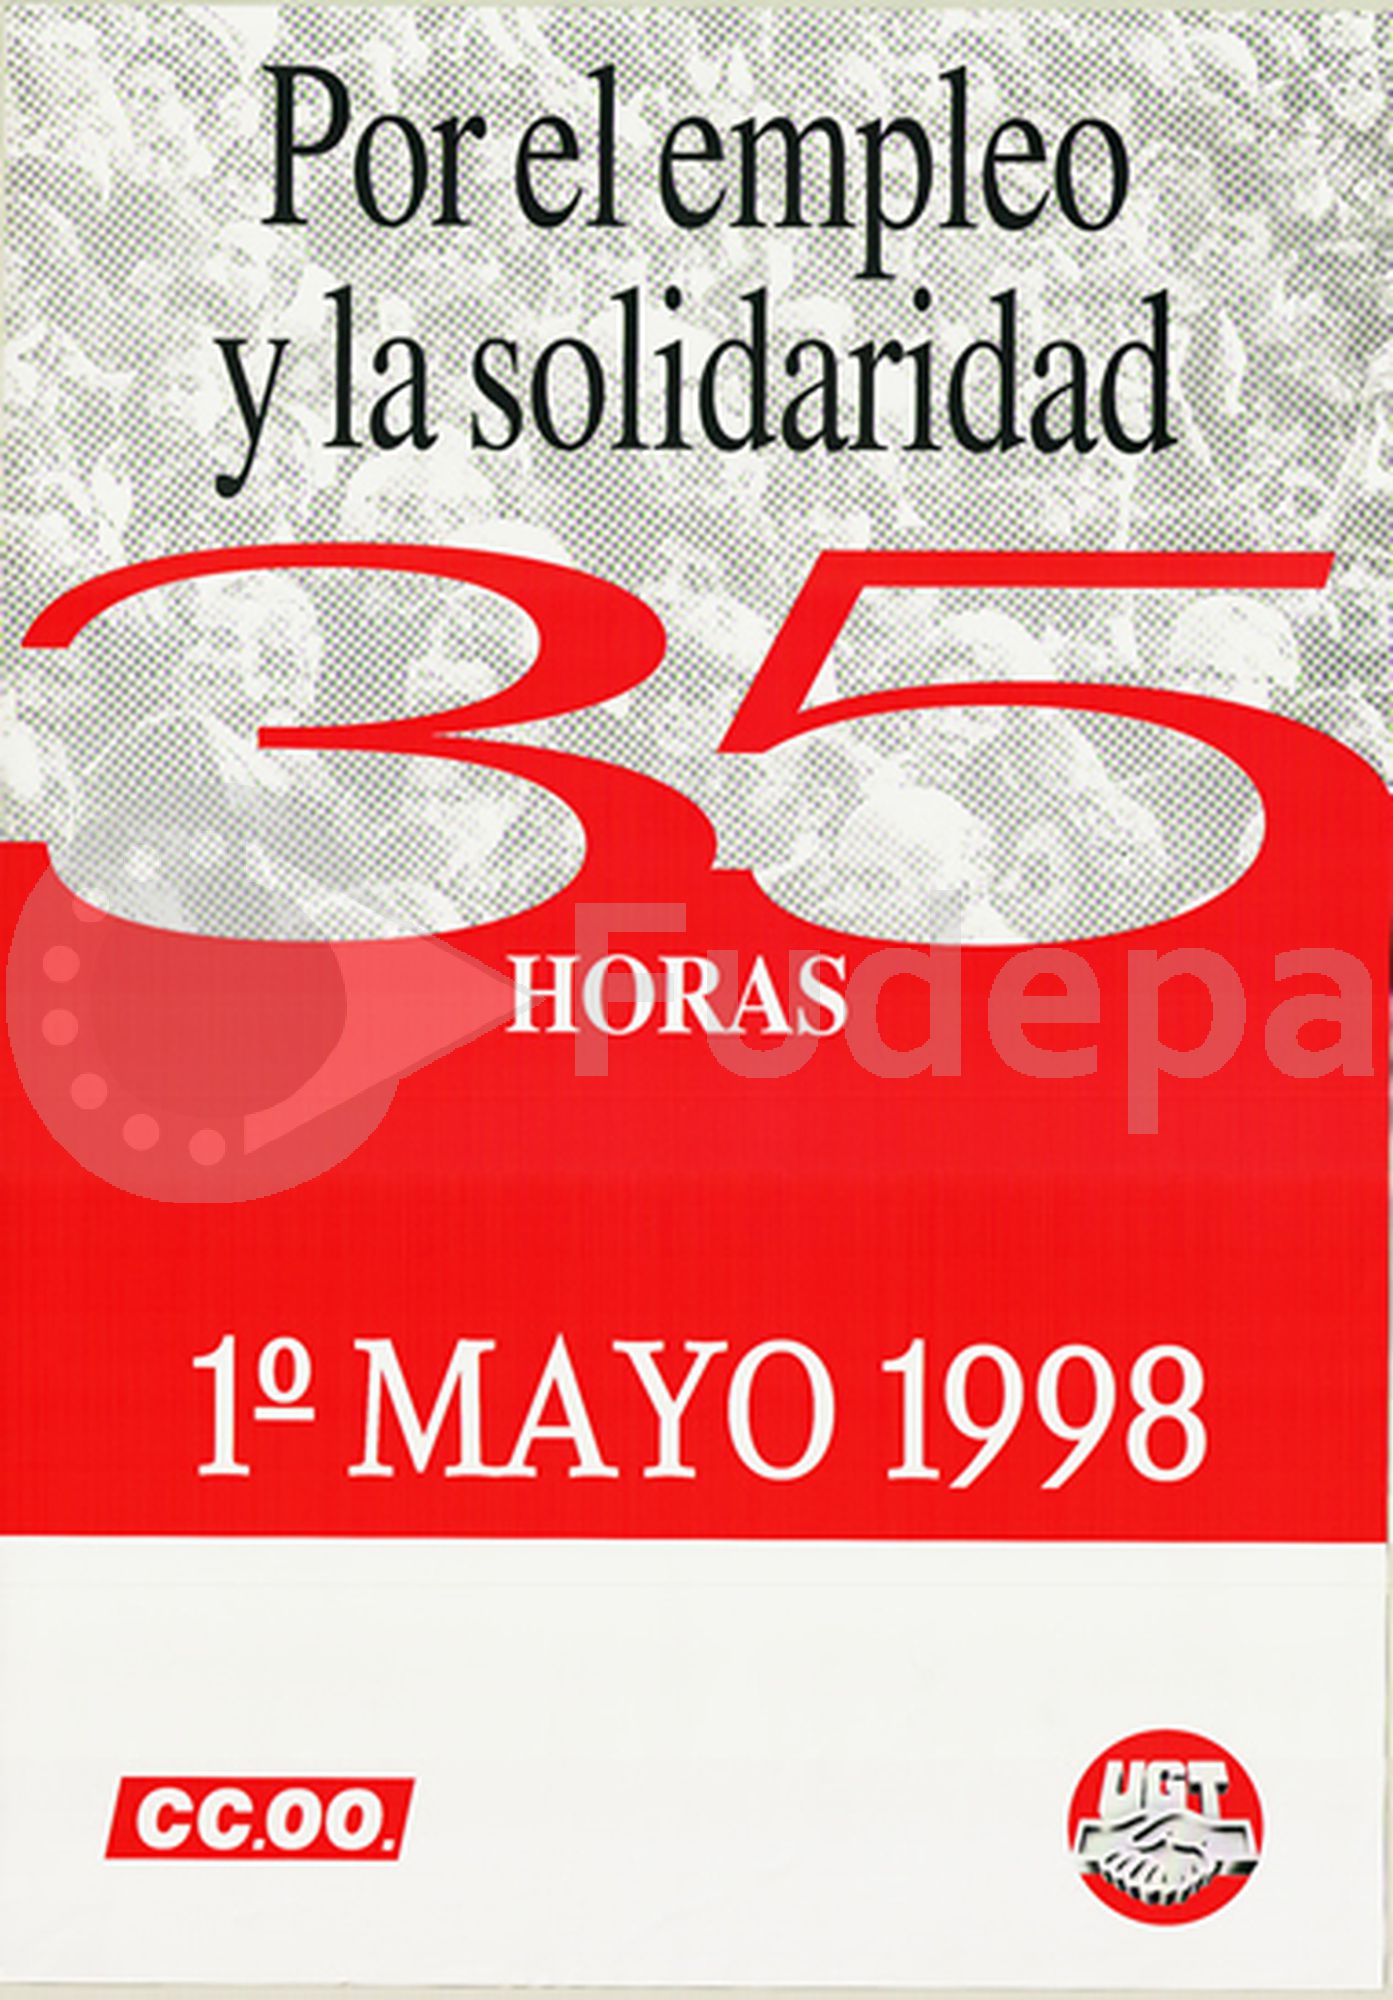 1998: Por el empleo y la solidaridad, 35 Horas